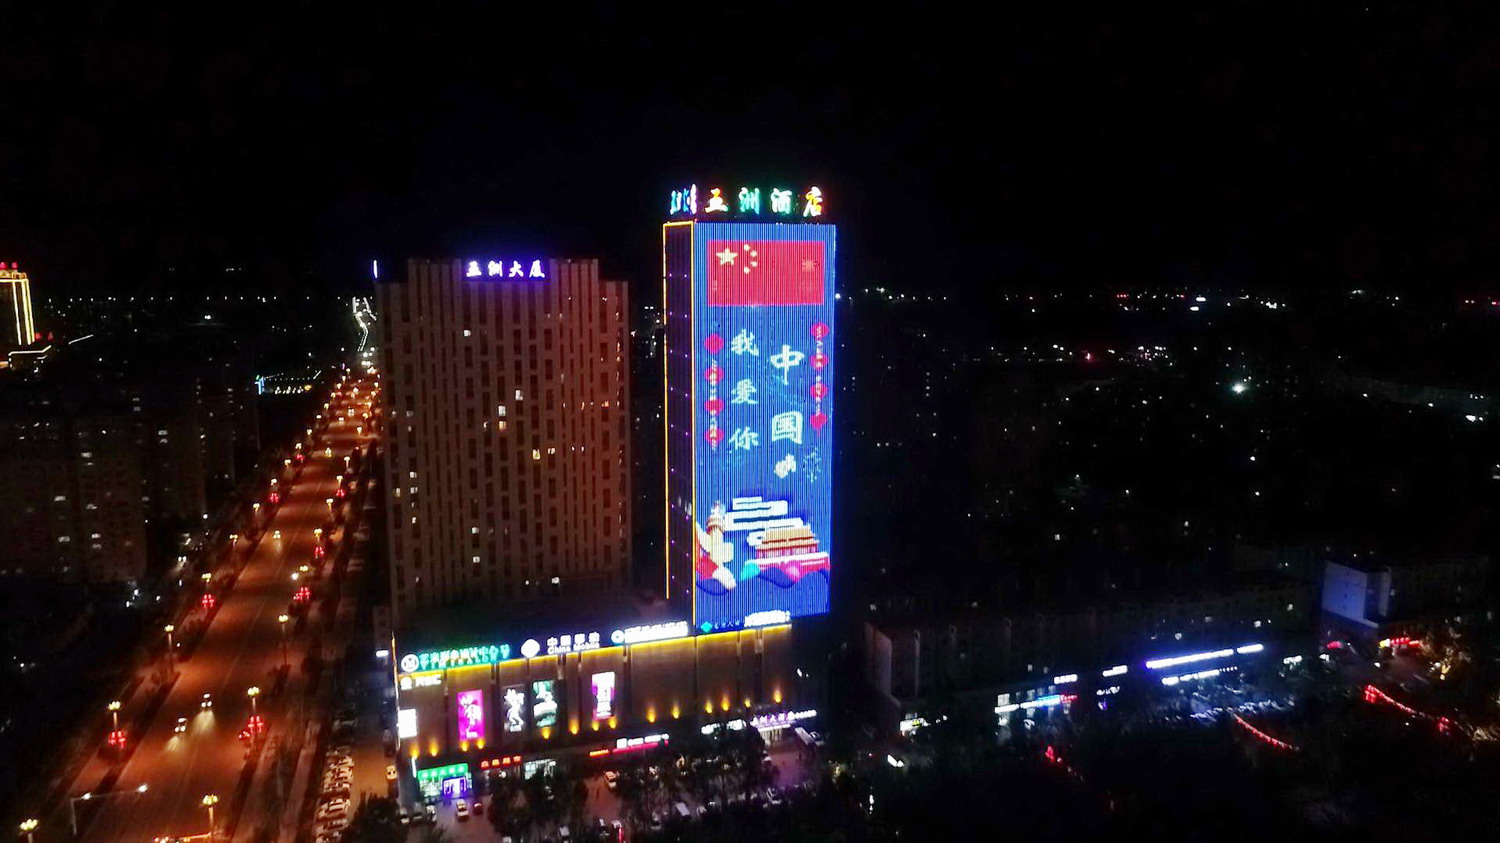 9月23日晚,库车县五洲大厦显示"我爱你,中国"字样,营造浓厚的节日氛围